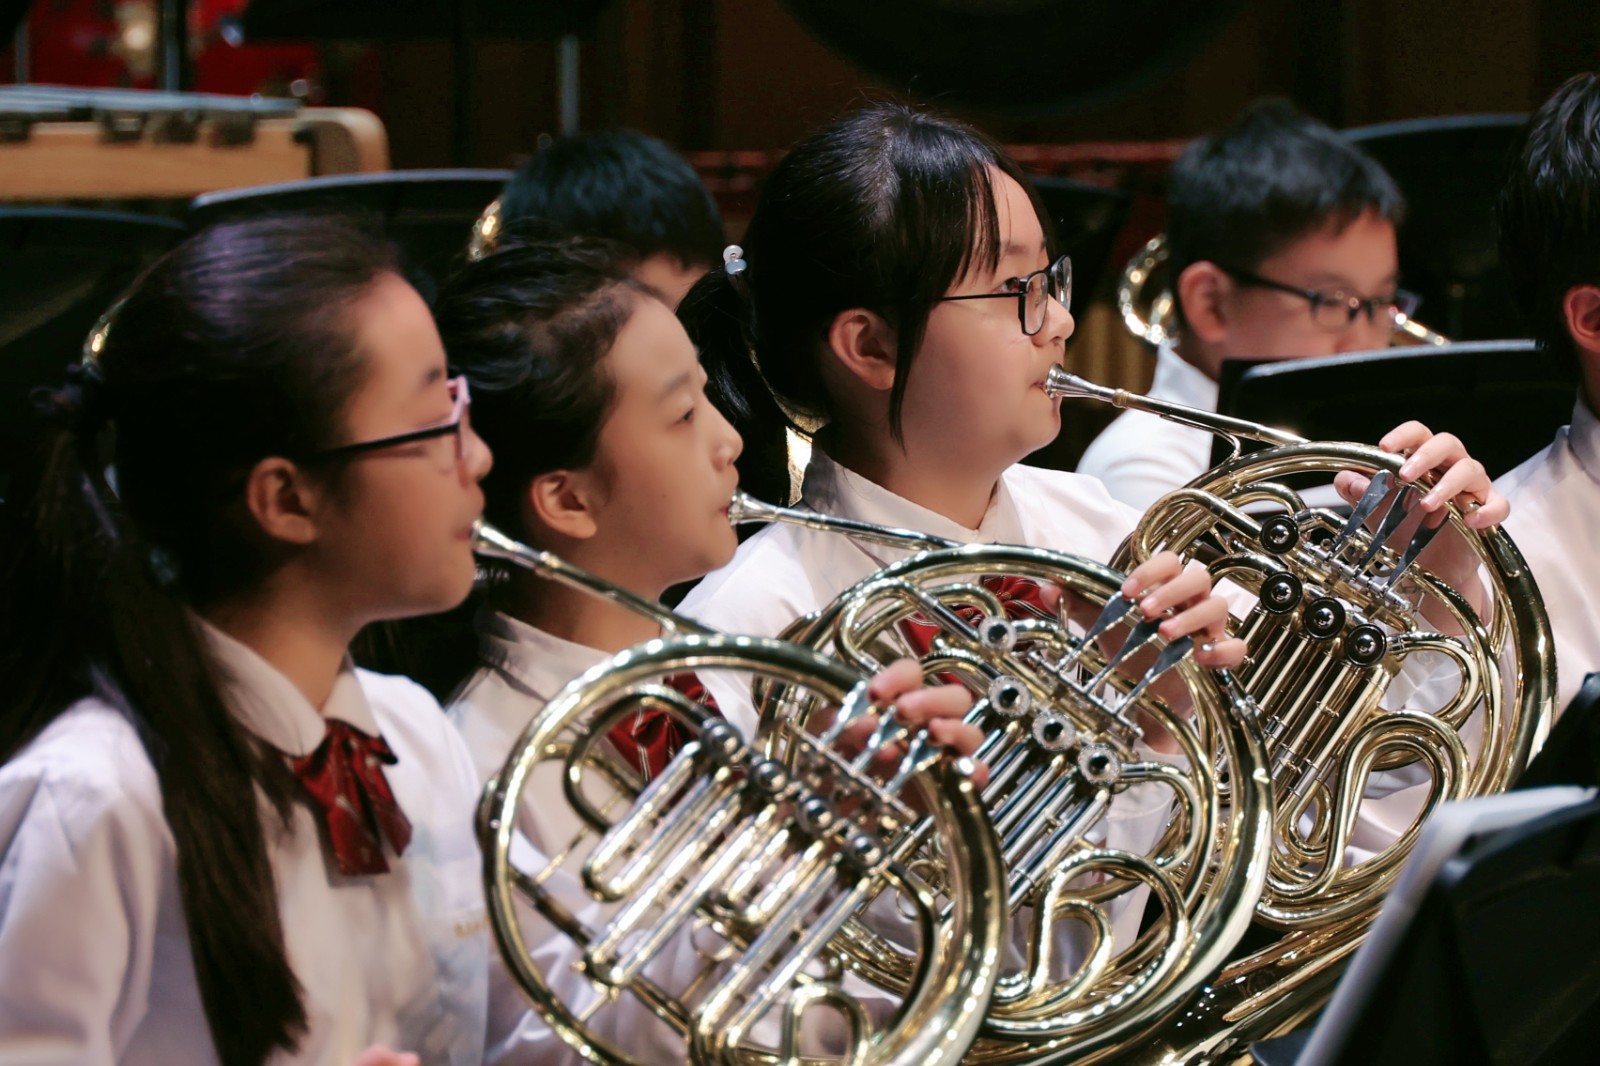 逐梦新时代  永远跟党走 —— 上海学生交响乐联盟专场音乐会